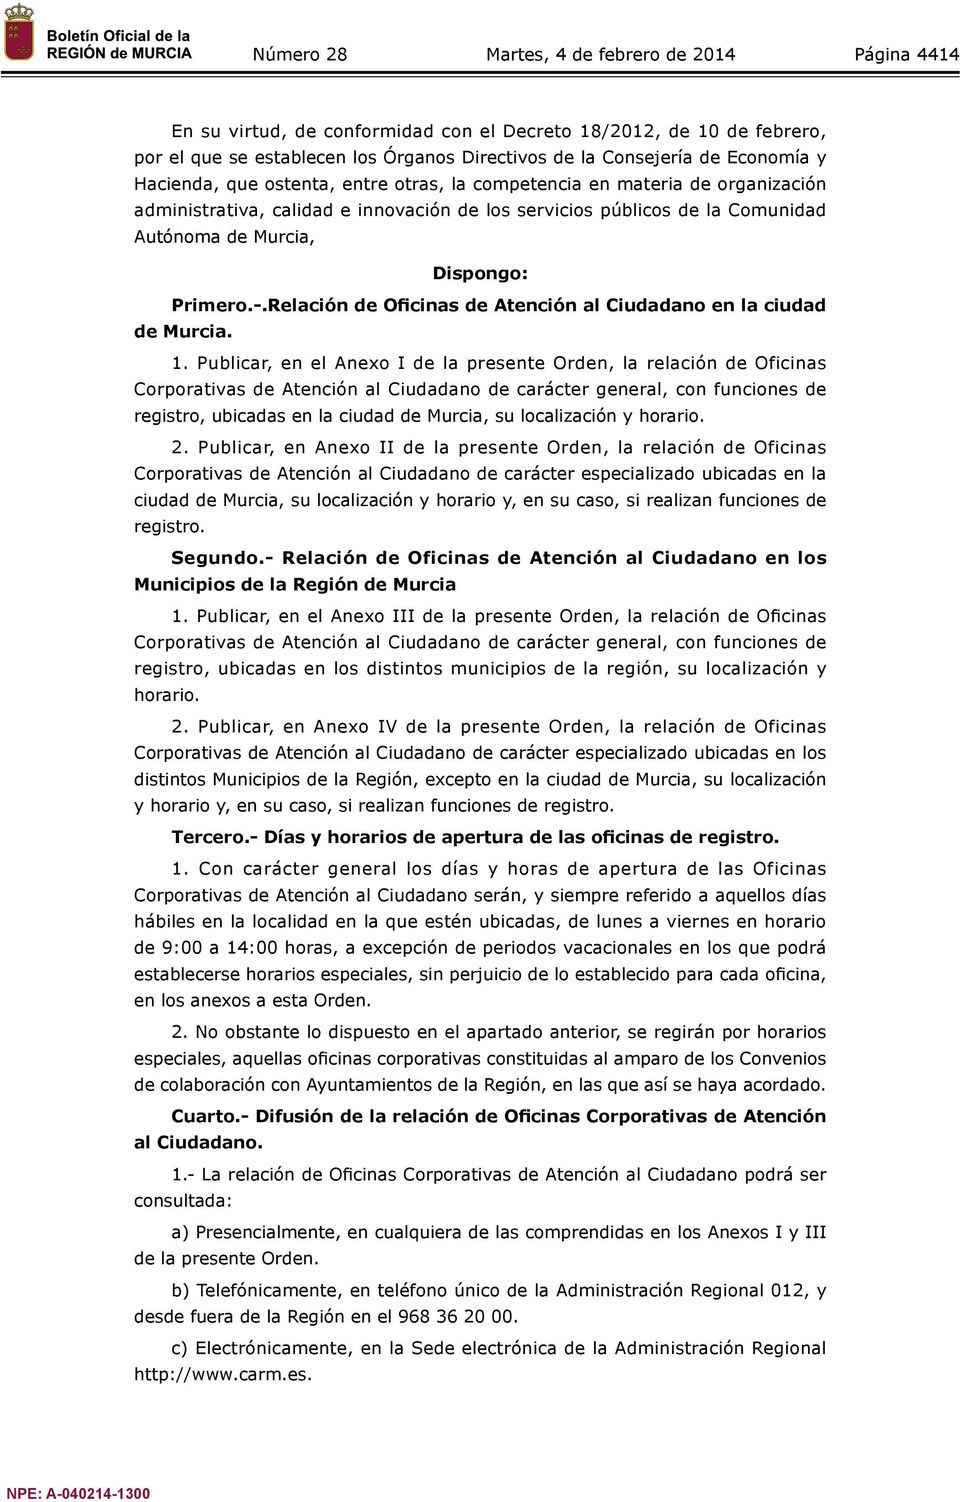 Relación de Oficinas de Atención al Ciudadano en la ciudad de Murcia. 1.